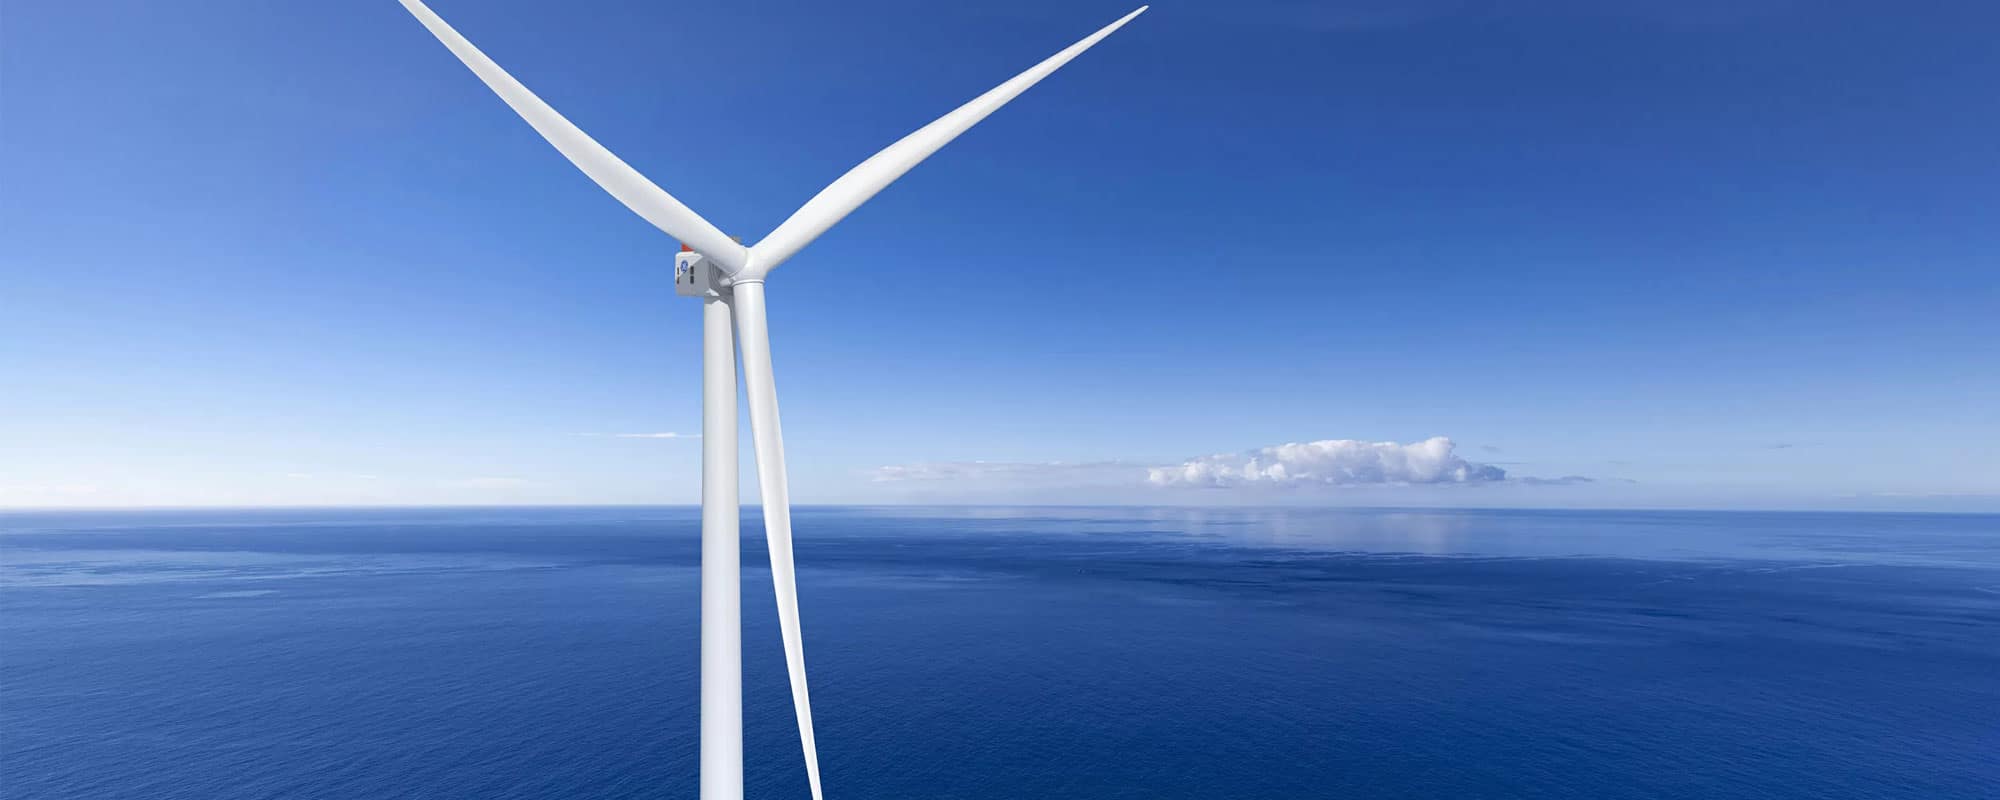 Подшипники для самой мощной в мире ветряной турбины